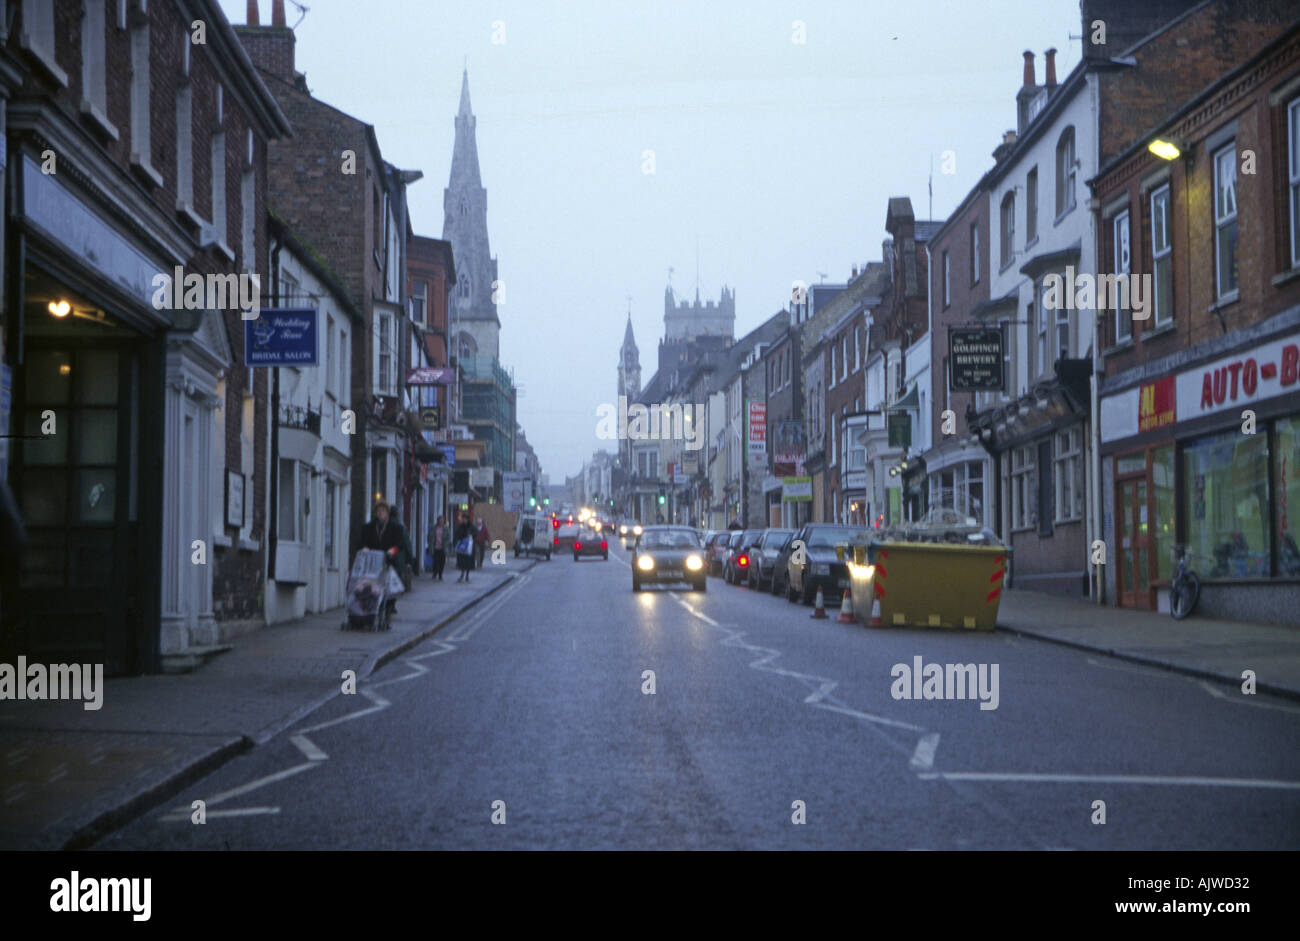 Dorchester in the rain Dorset England Stock Photo